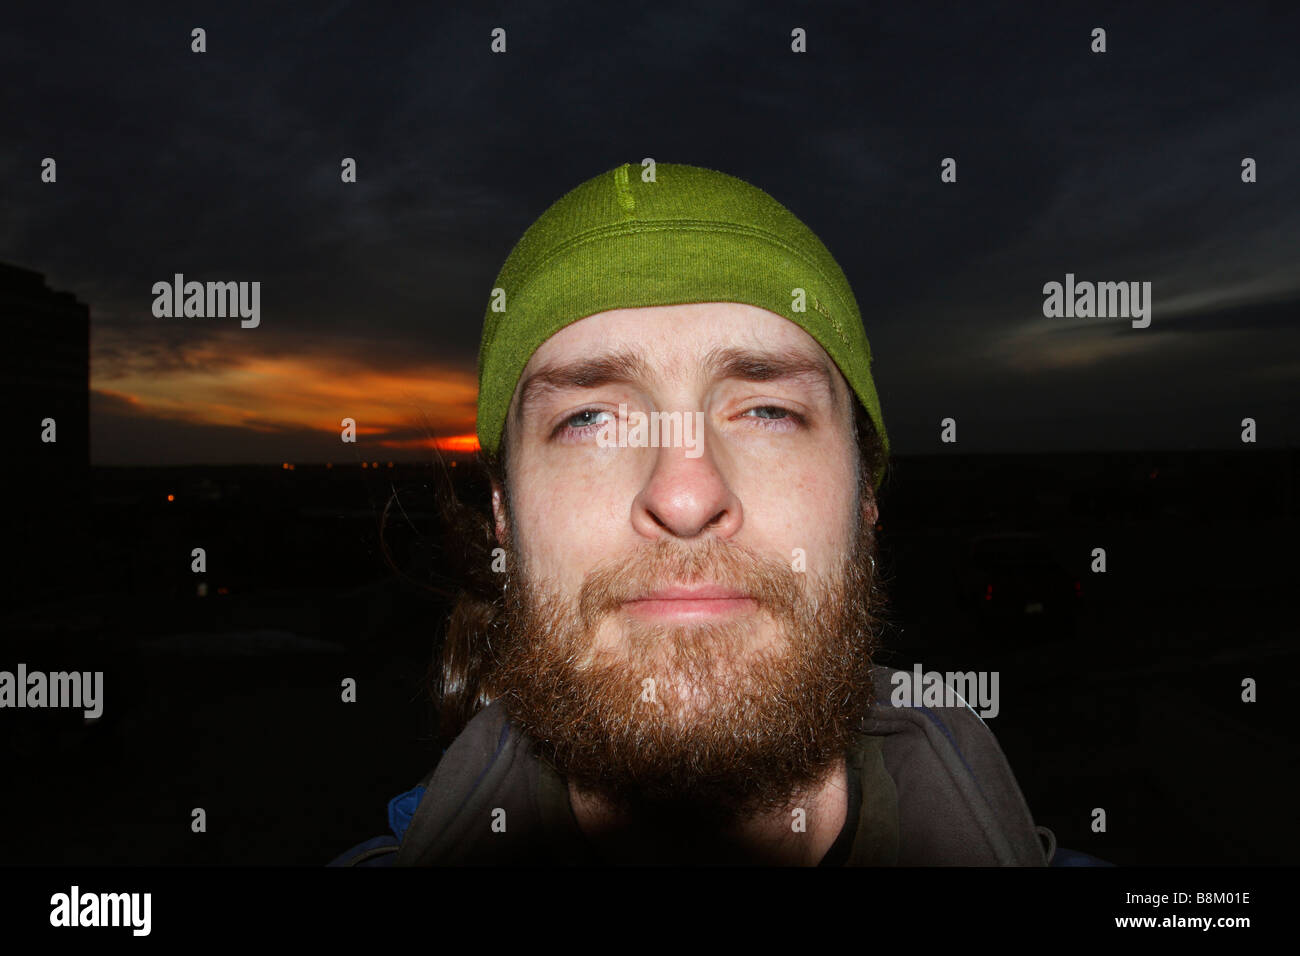 Man with beard wearing green patagonia hat. Stock Photo